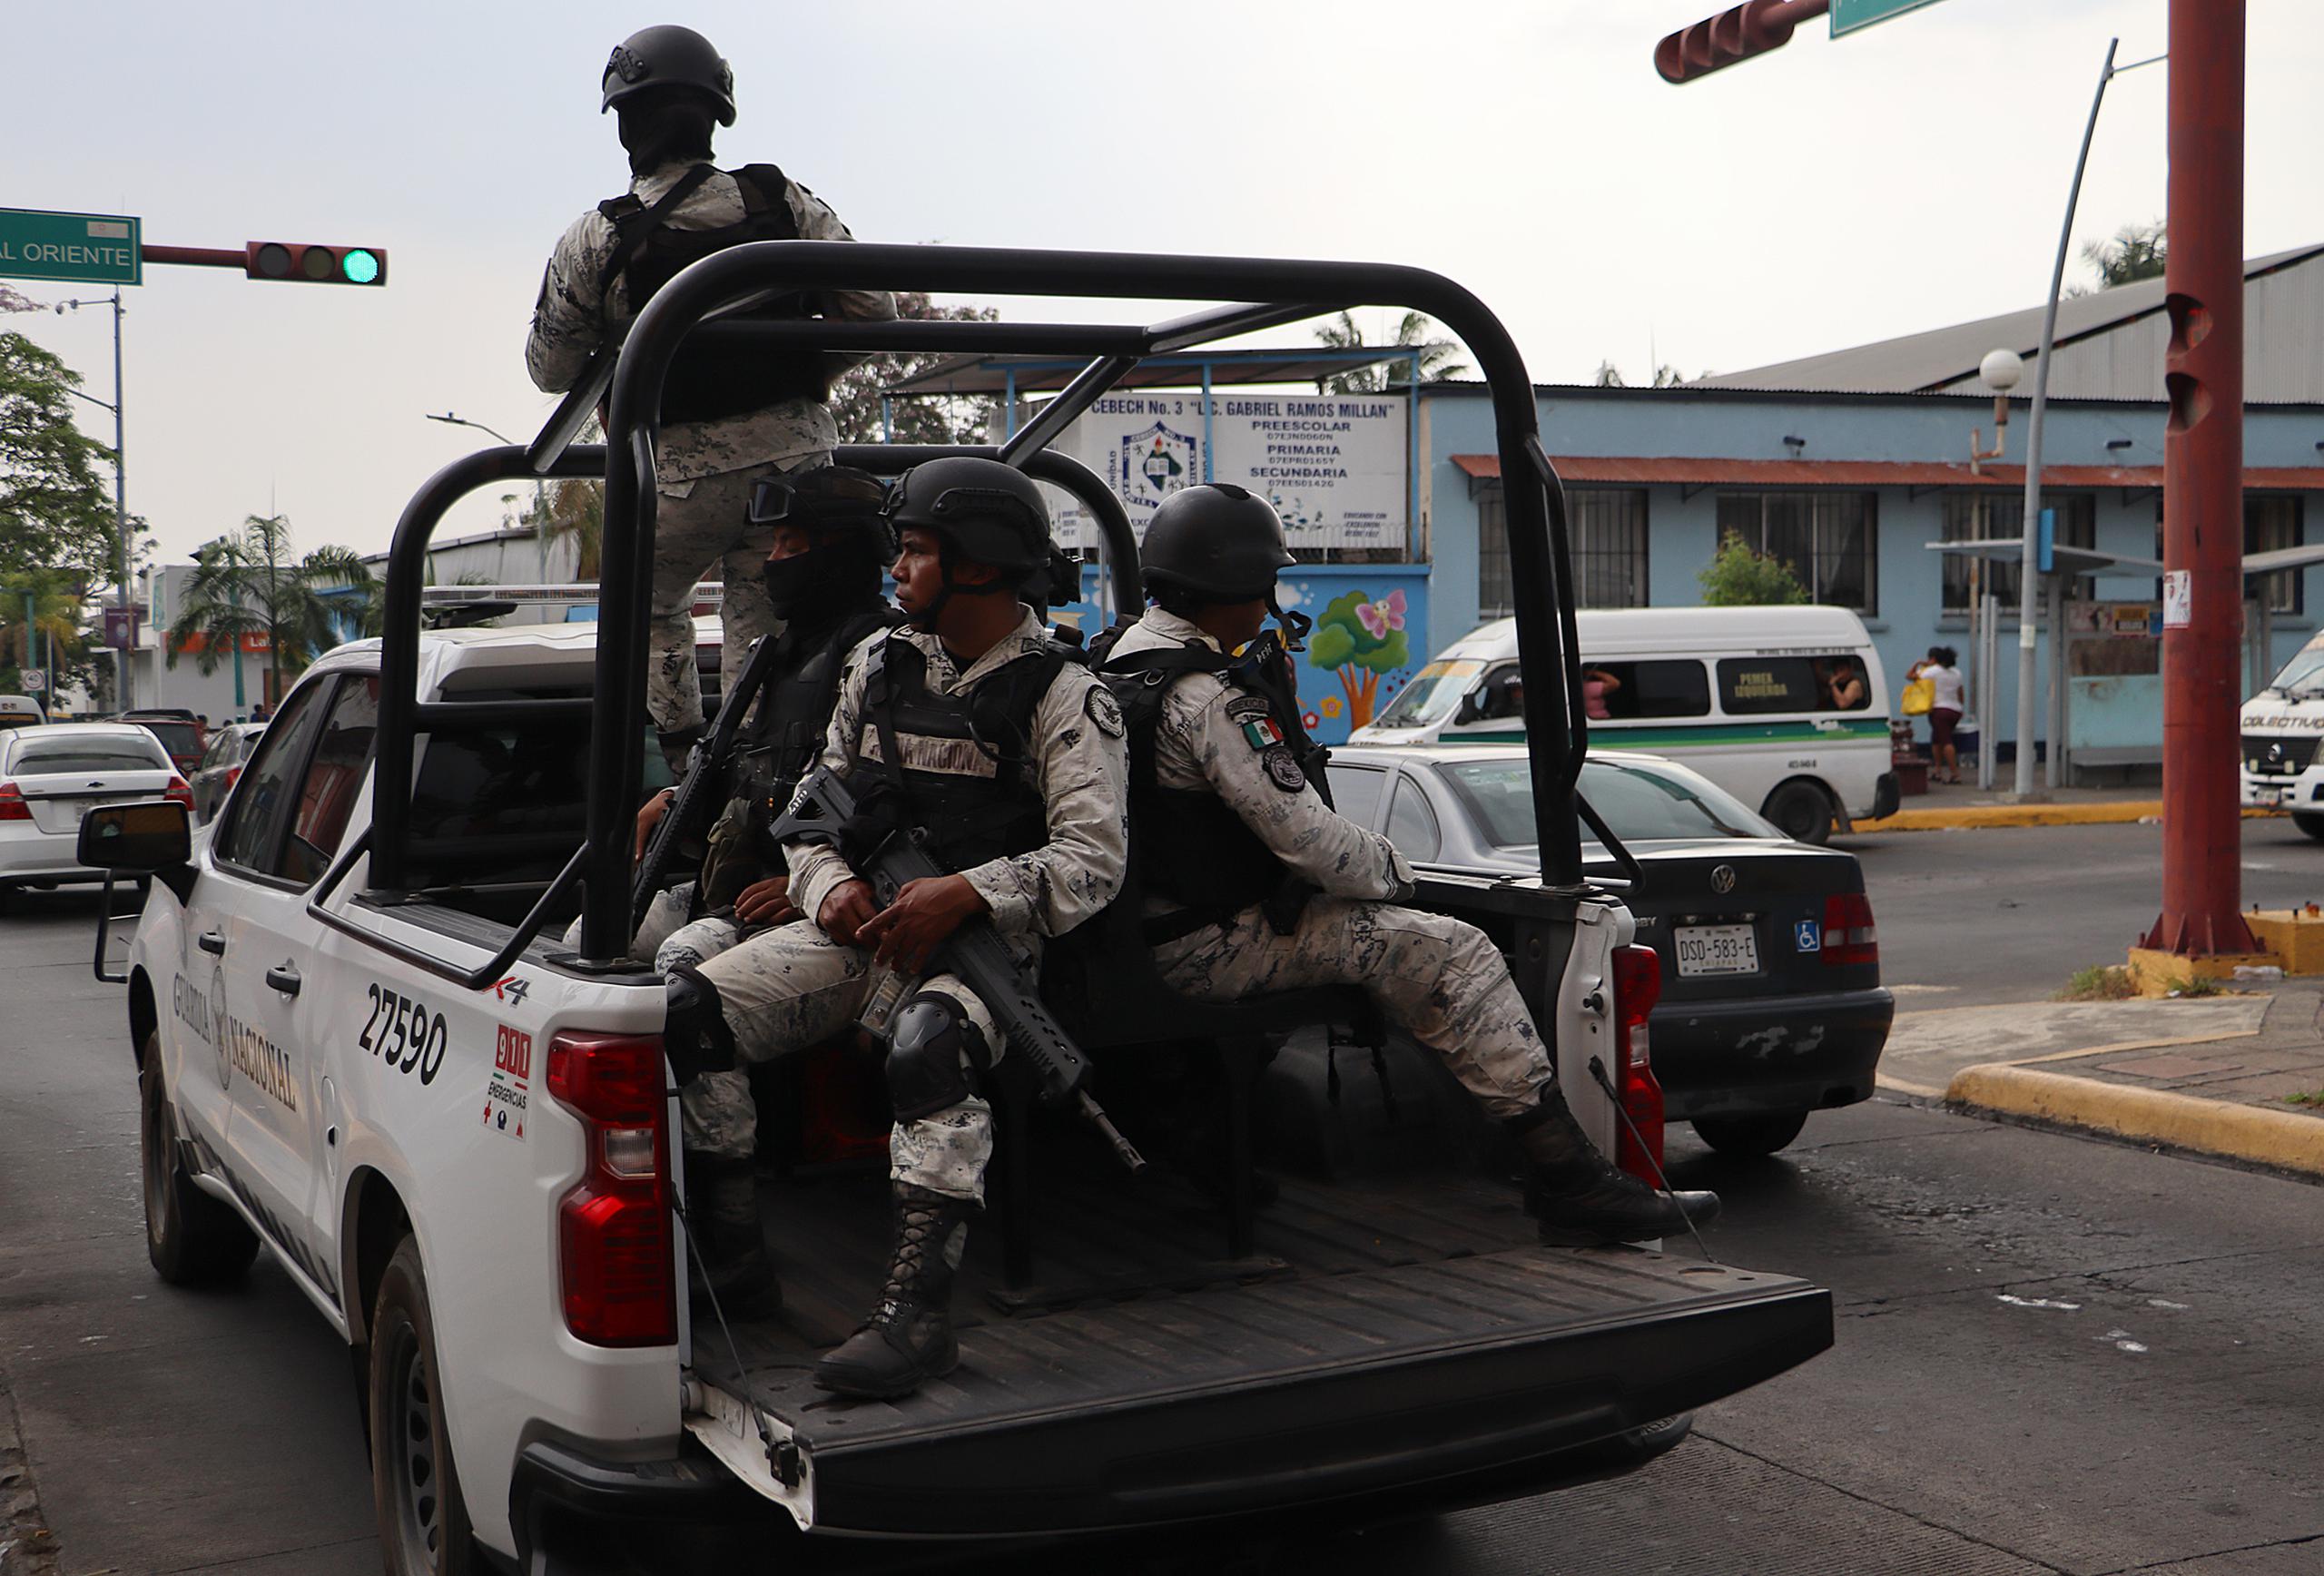 La alerta se produce mientras crece la violencia en Chiapas por las disputas de los carteles del narcotráfico para controlar la frontera de México con Centroamérica.